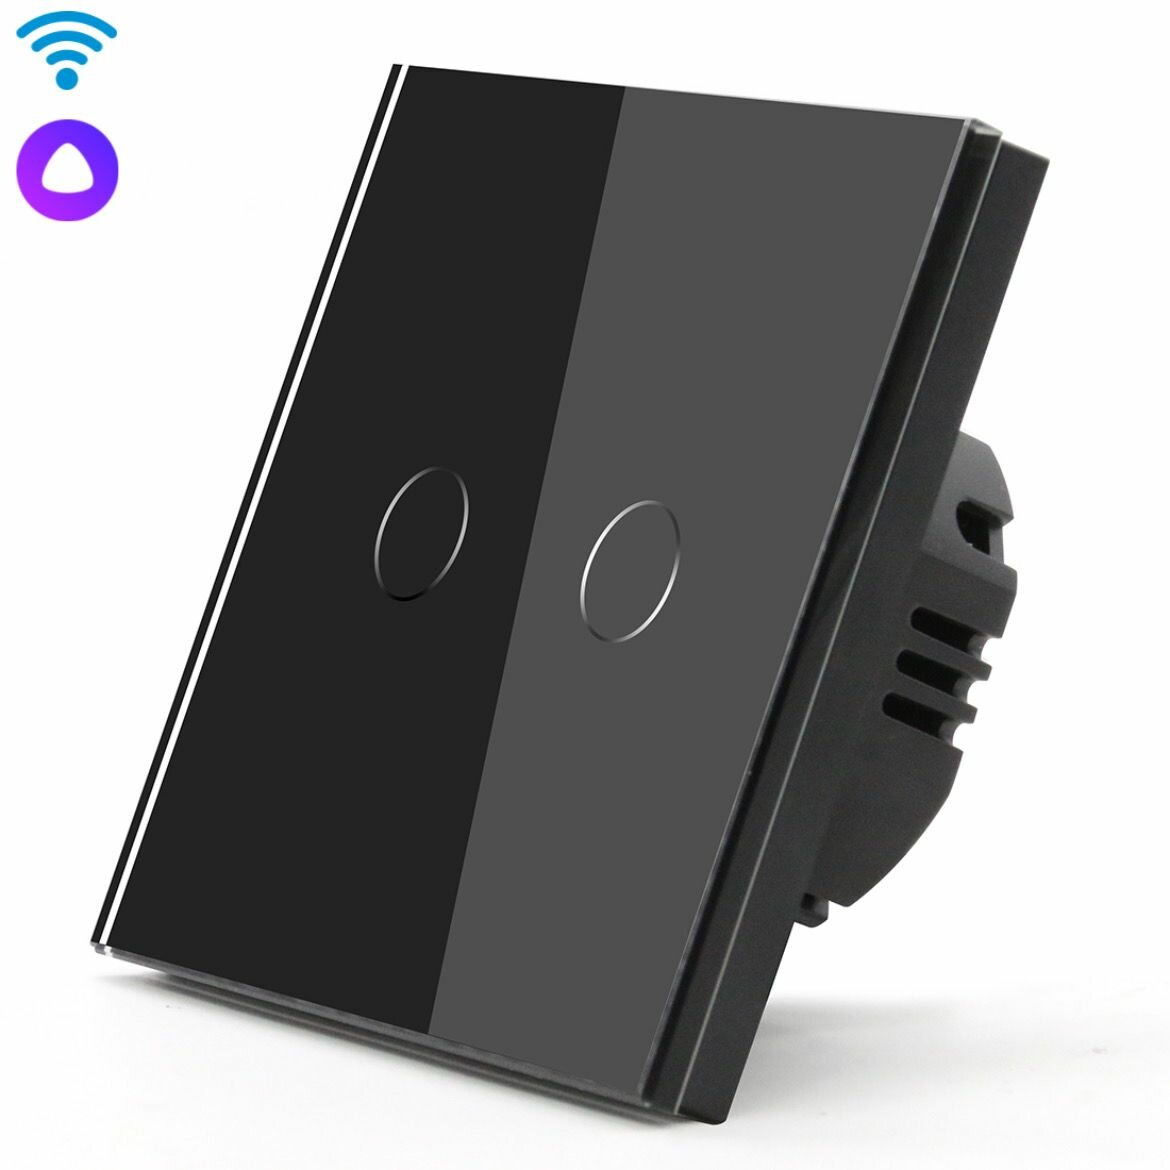 Cенсорный Wi-Fi выключатель/переключатель с Алисой, 2 клавиши 1 пост, (2G) стекло 86х86мм, цвет черный